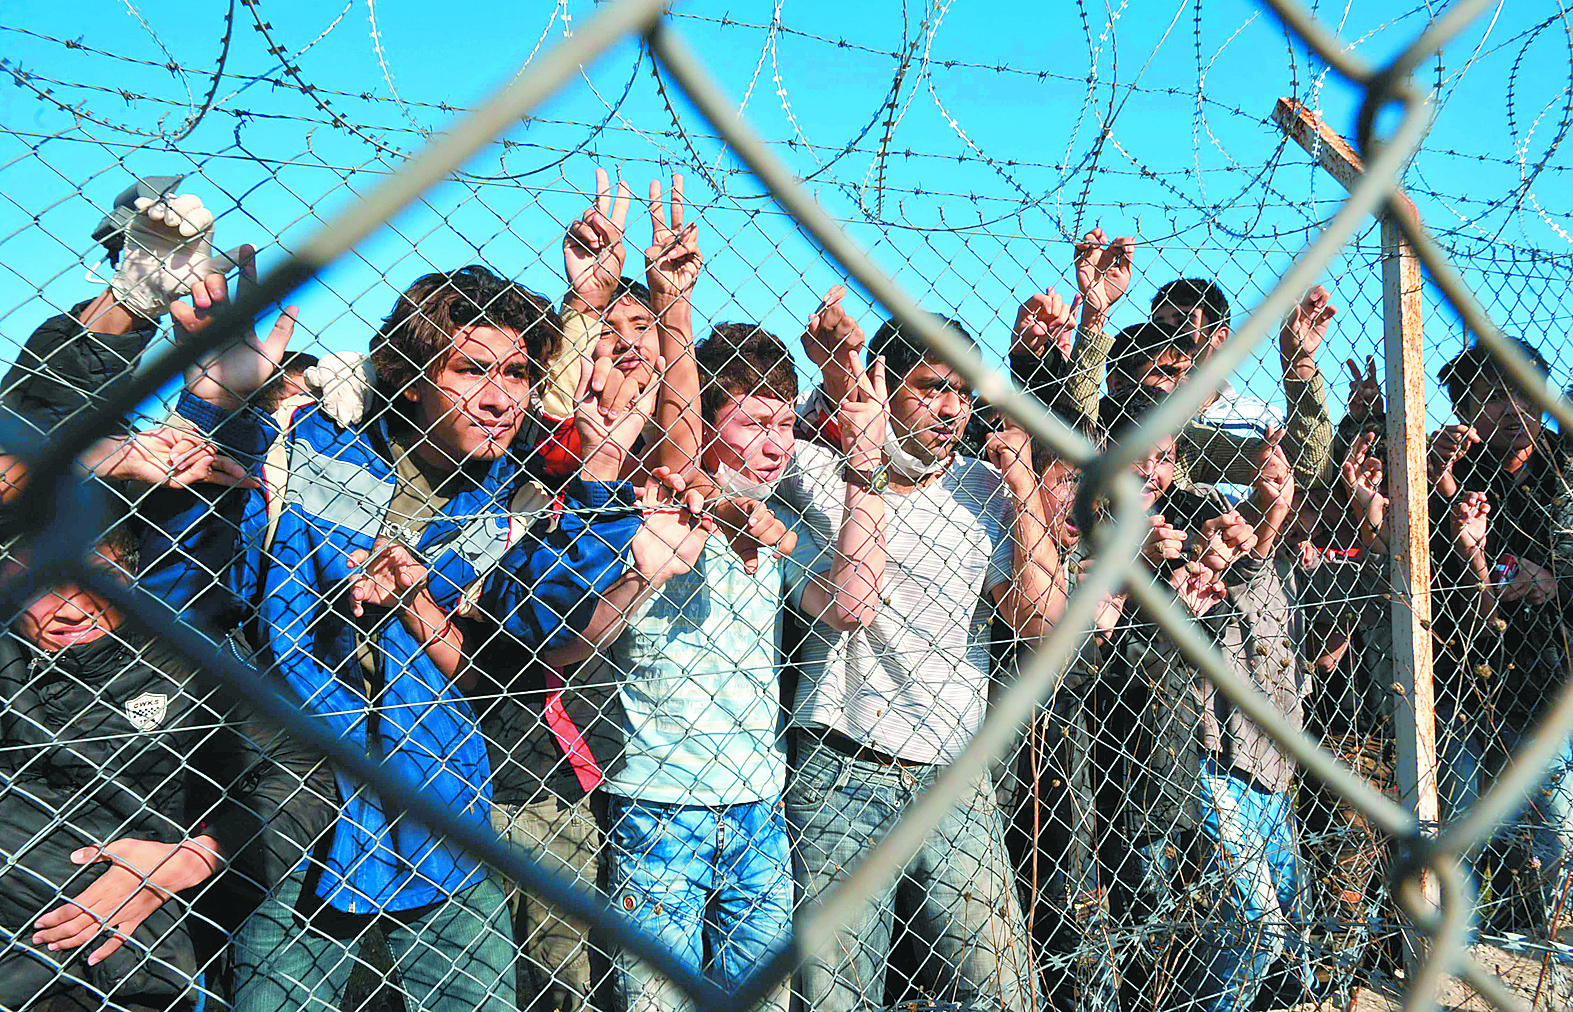 Σεσίλα Μάλμστρομ: «Η ΕΕ χρειάζεται υπηρεσία ασύλου για μετανάστες»